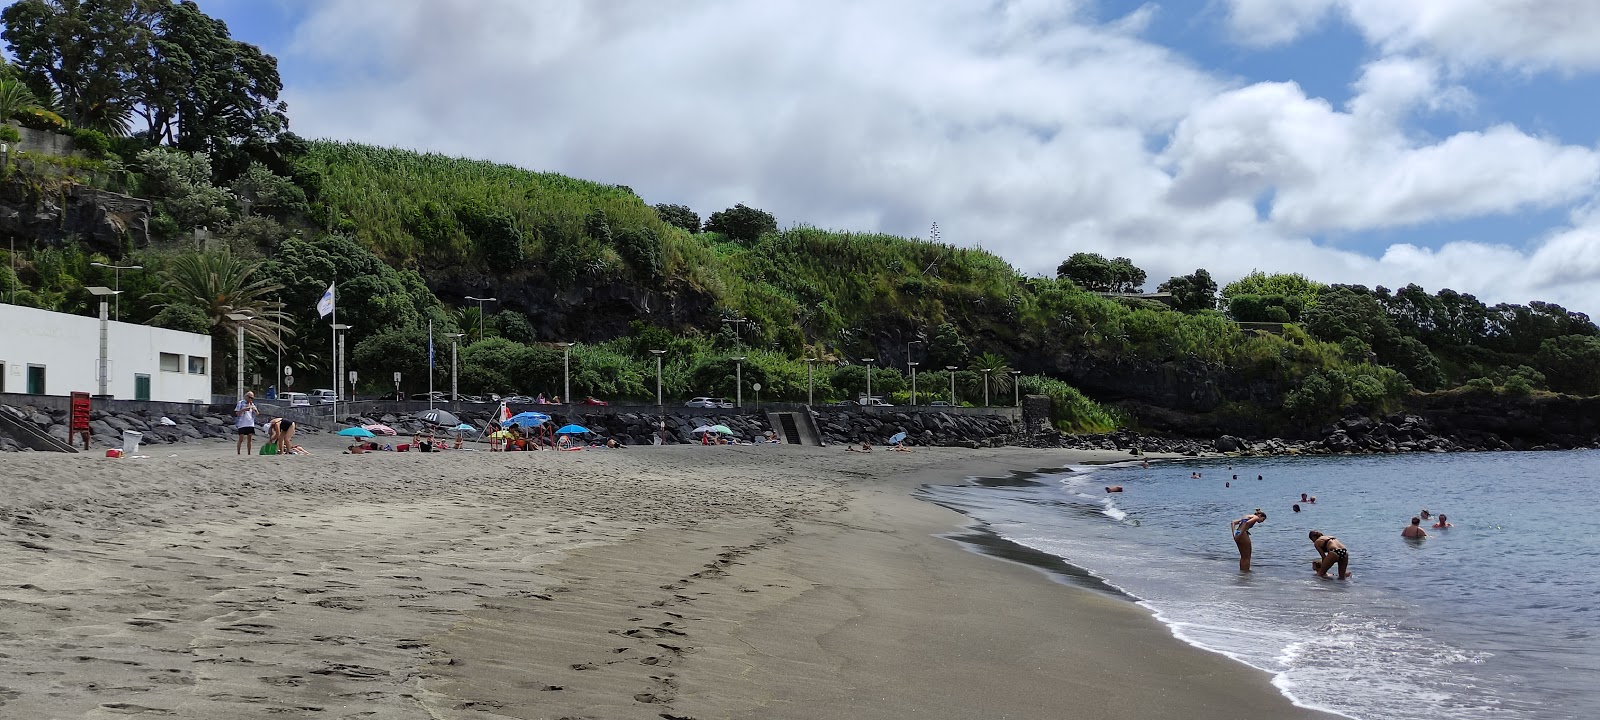 Foto af Praia da Vinha da Areia - populært sted blandt afslapningskendere